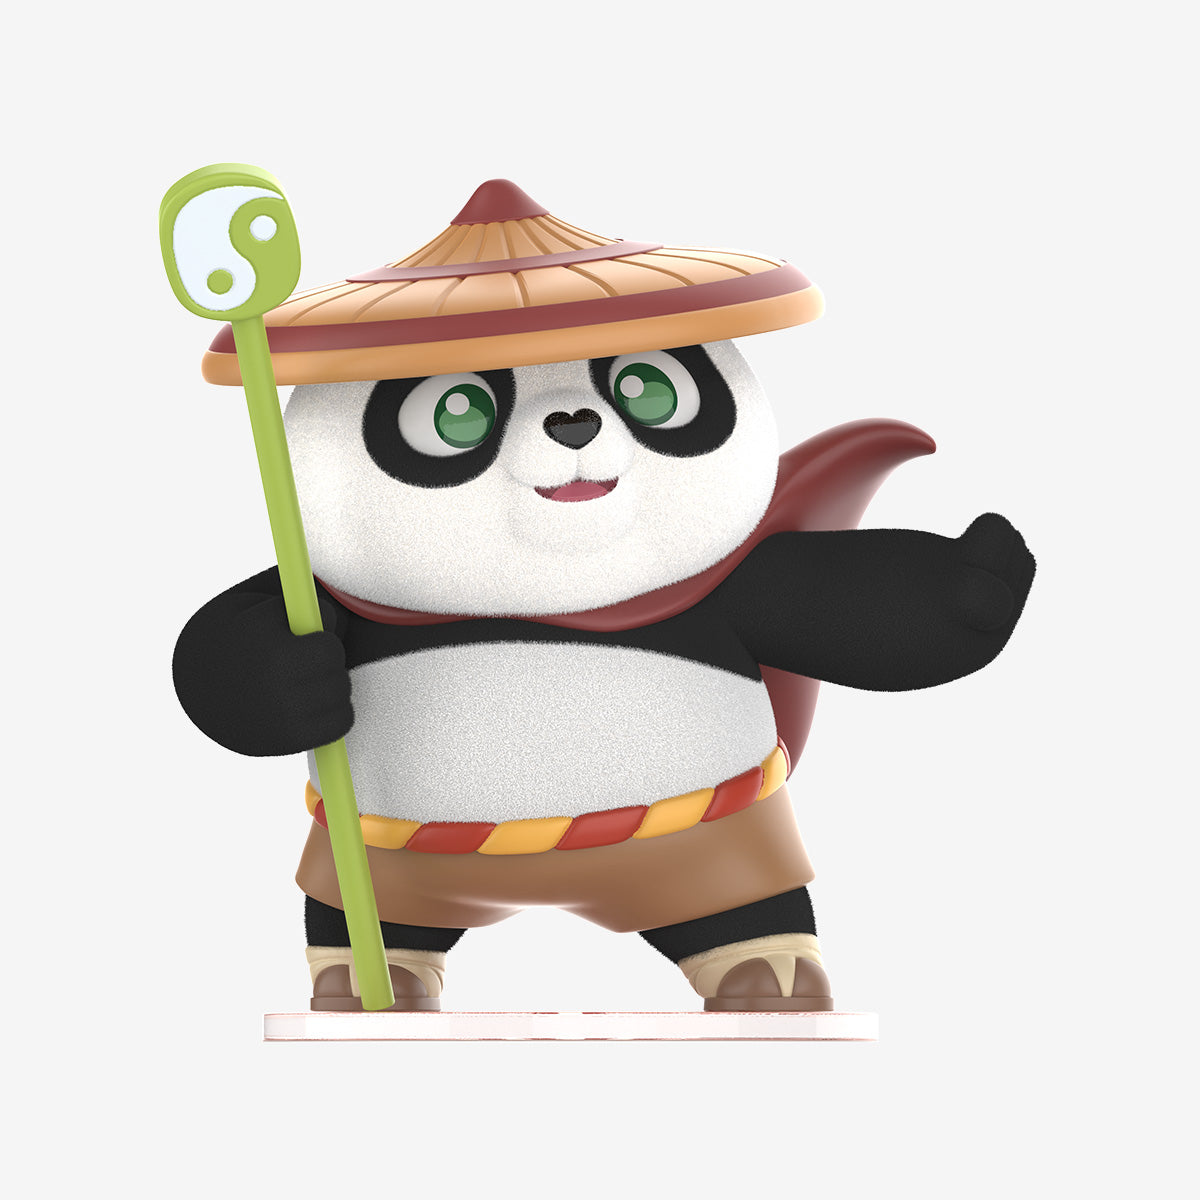 Figuras de la serie Kung Fu Panda